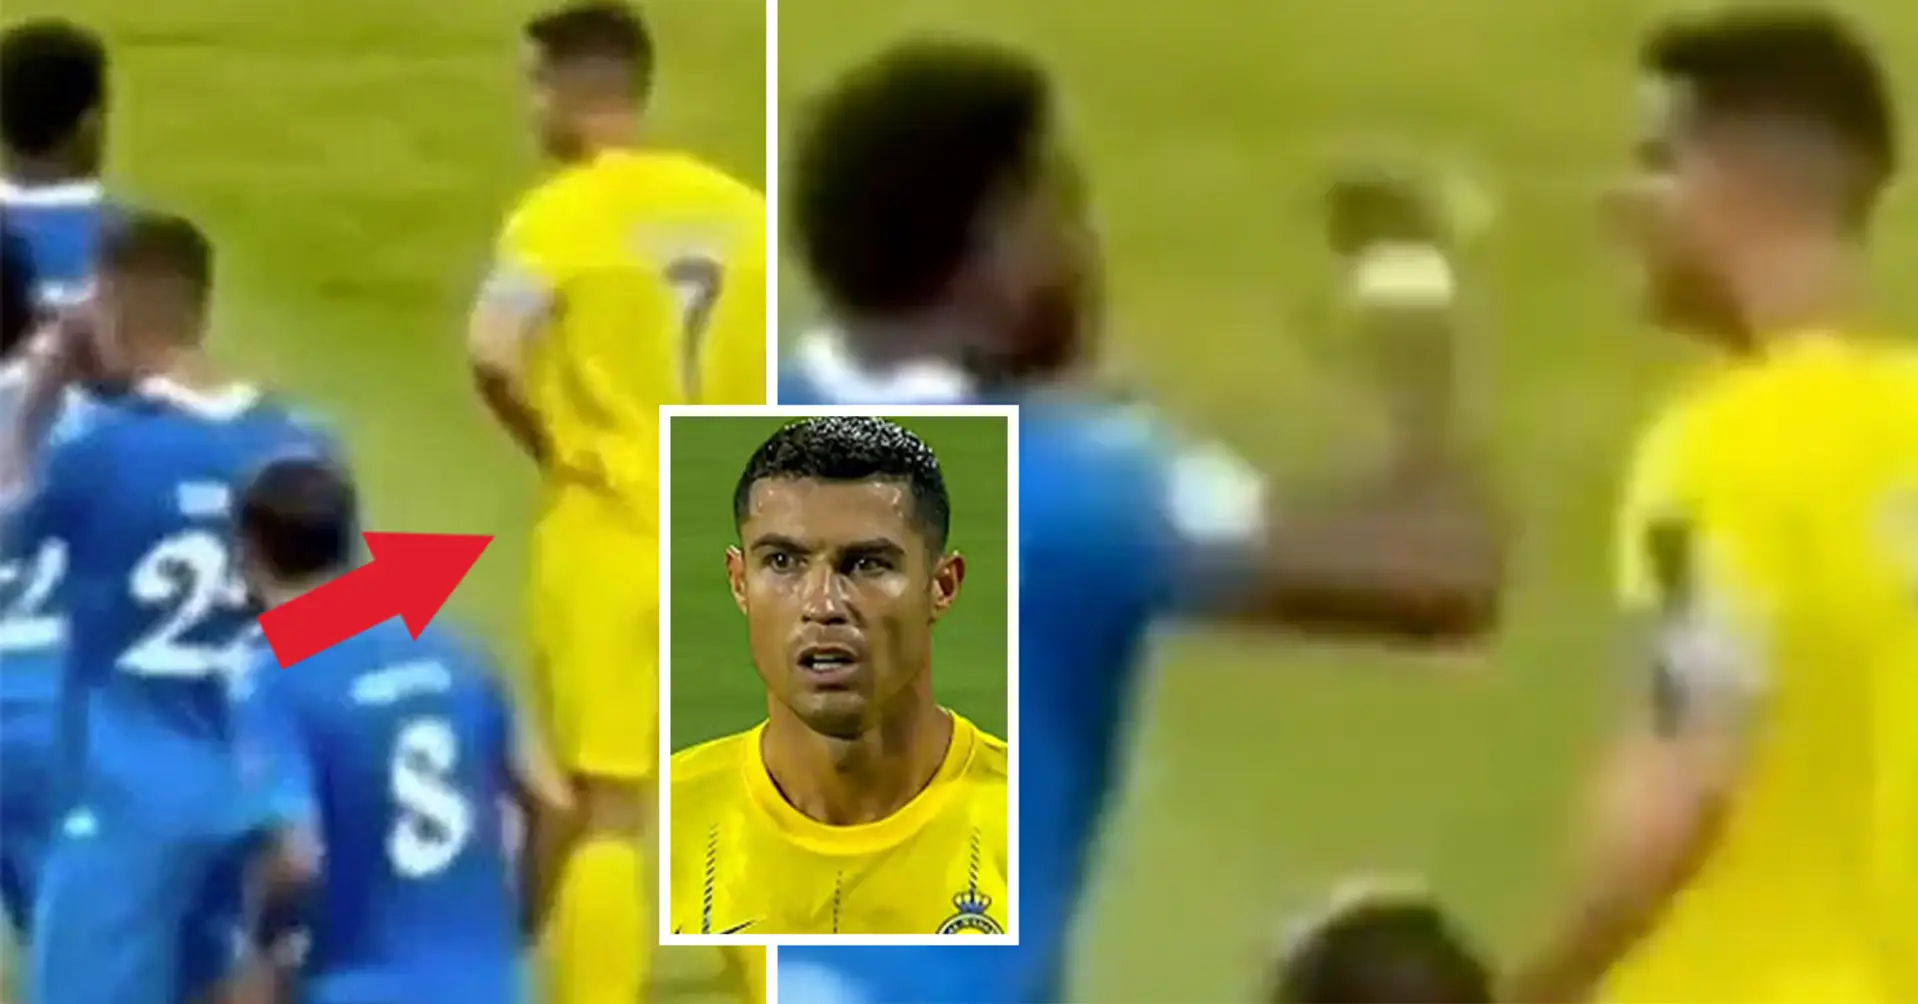 Schmutzige Tat: Ronaldo fuhr mit der Hand unter sein Trikot und dann über das Gesicht seines Gegners. Die Reaktion des Spielers wurde festgehalten